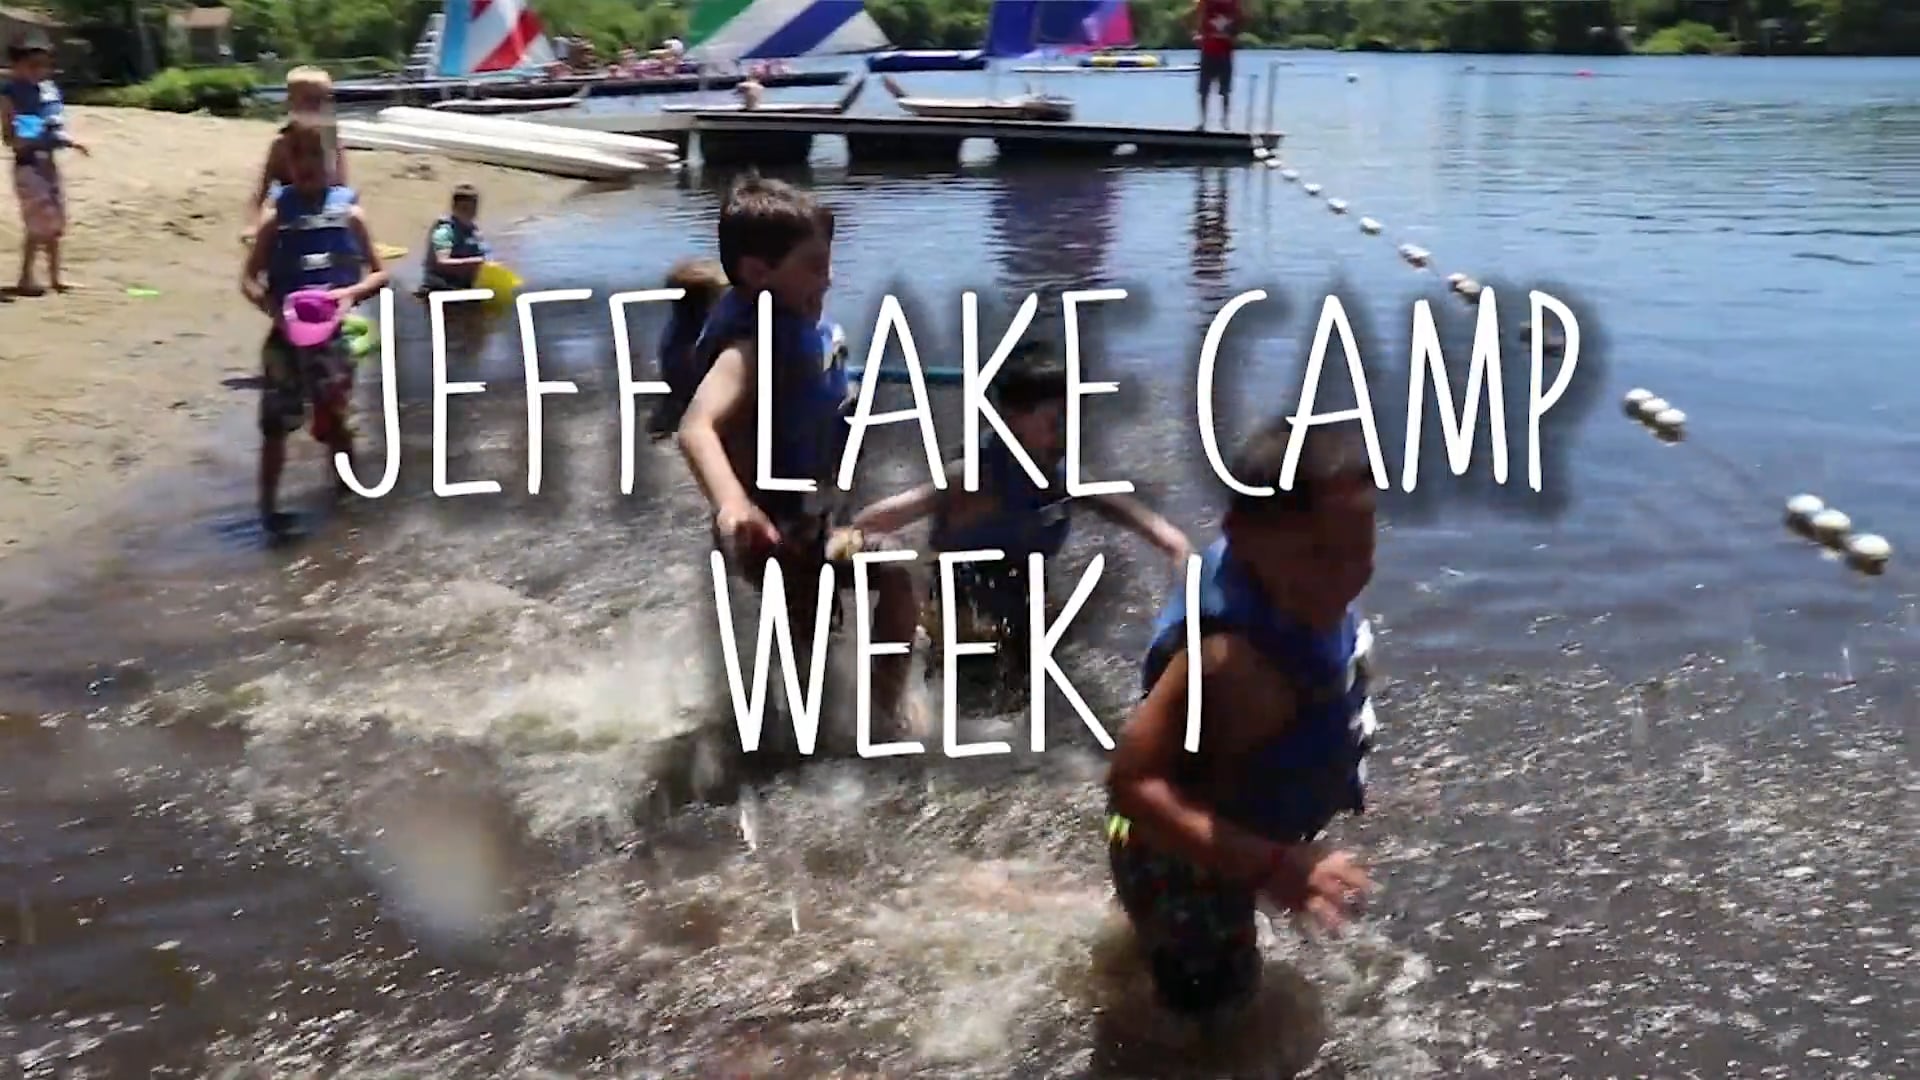 Jeff Lake Camp: Week 1 Highlights!